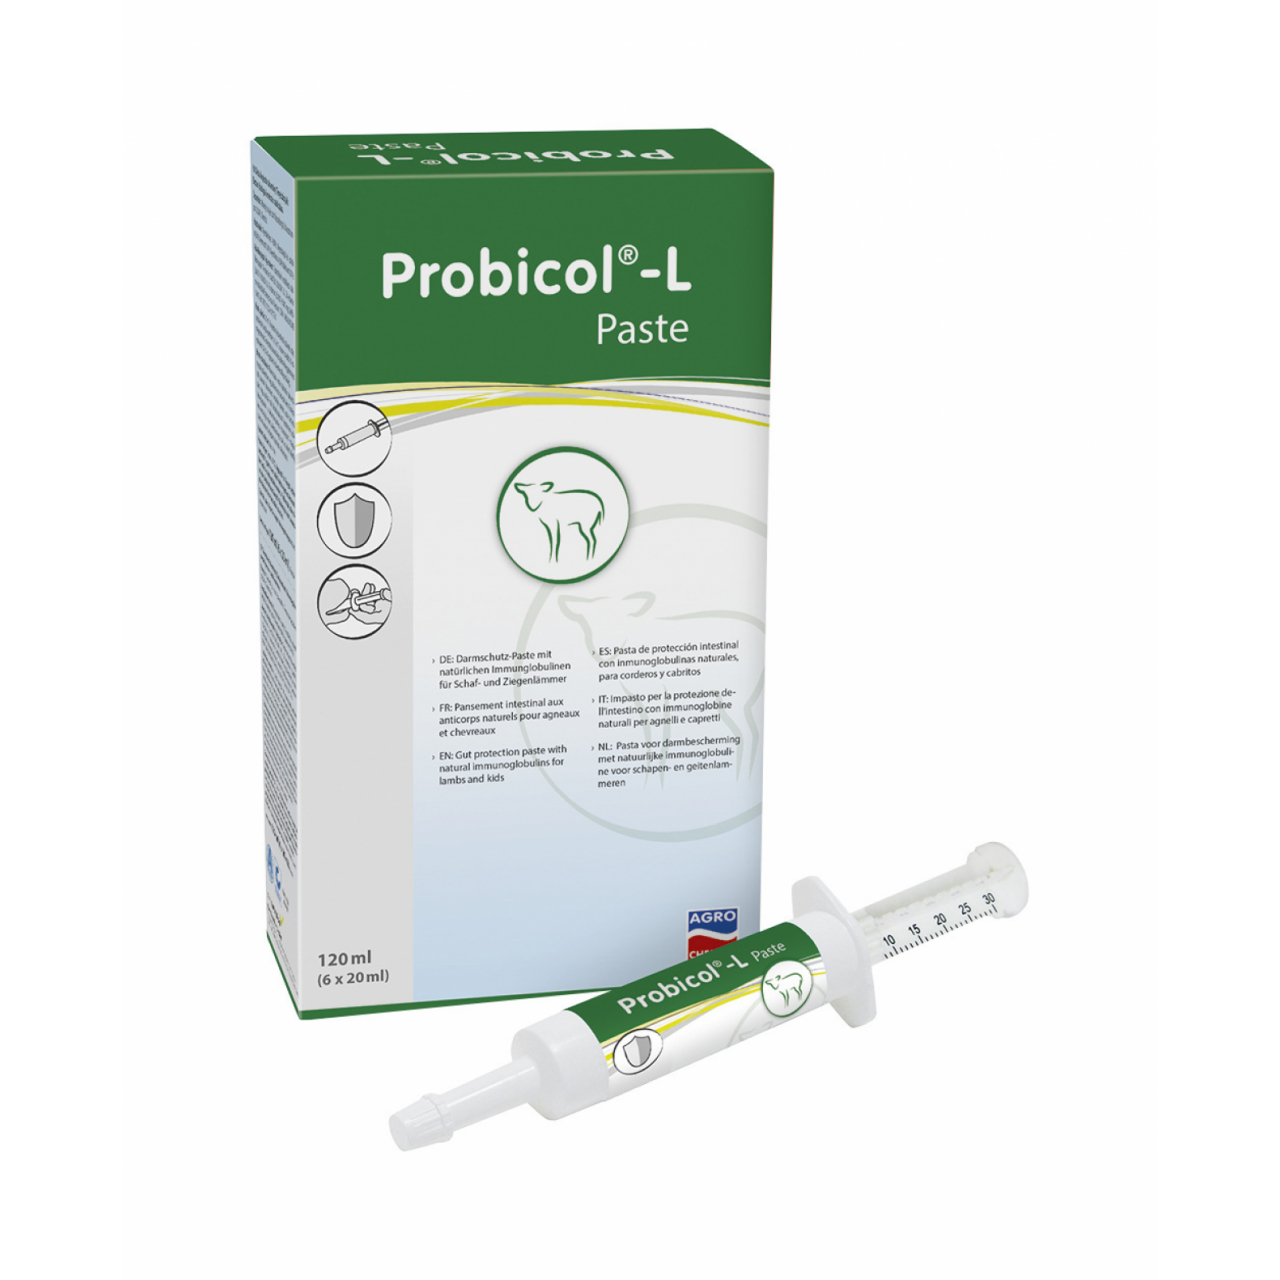 Probicol®-L paszta - 6 x 20 ml